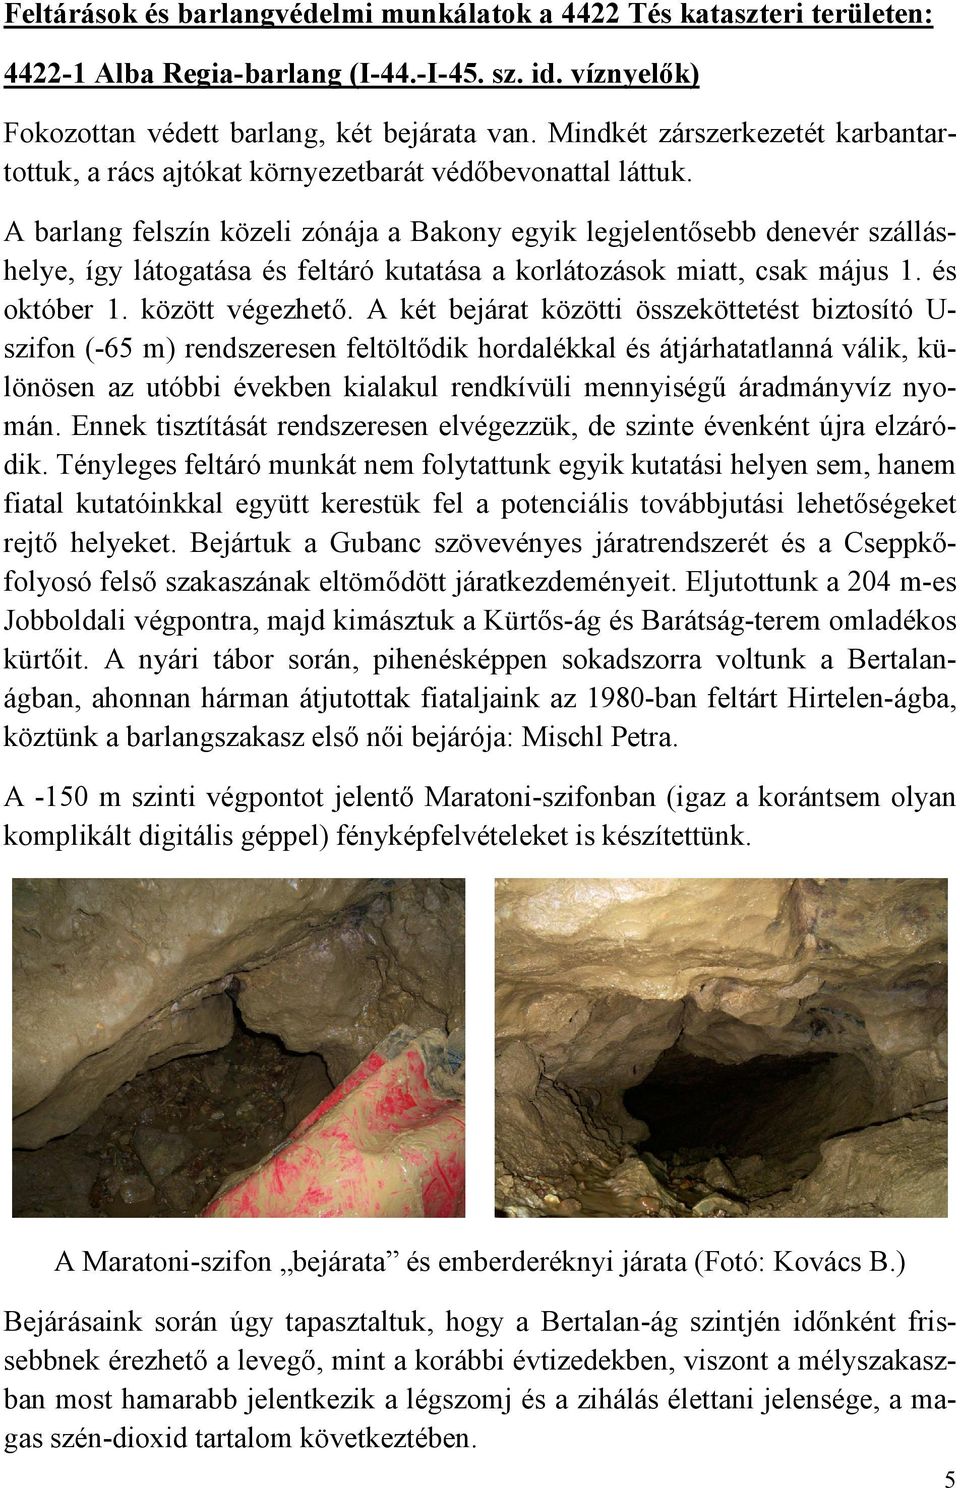 A barlang felszín közeli zónája a Bakony egyik legjelentısebb denevér szálláshelye, így látogatása és feltáró kutatása a korlátozások miatt, csak május 1. és október 1. között végezhetı.